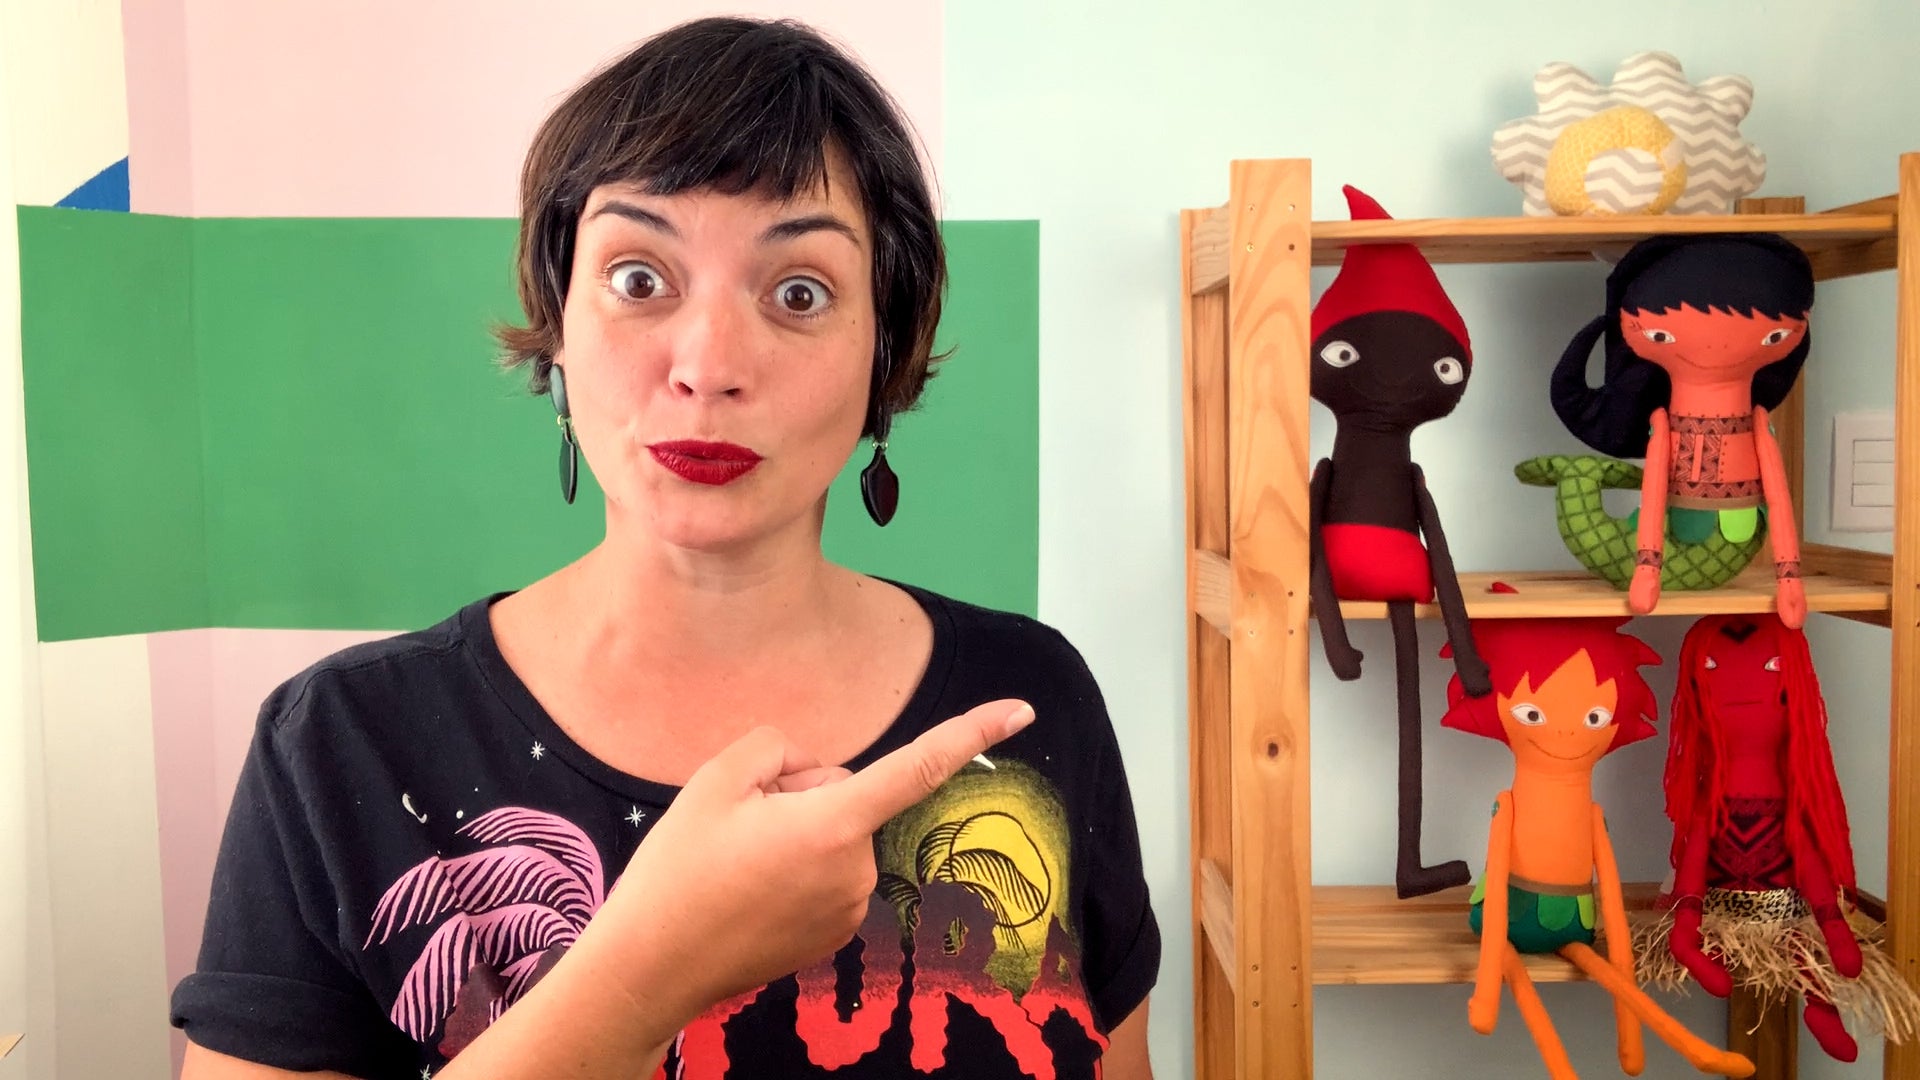 Foto de Flávia Scherner, do canal Fafá Conta Histórias. Ela está apontando para um estante com bonecos de pano que representam personagens do folclore brasileiro.